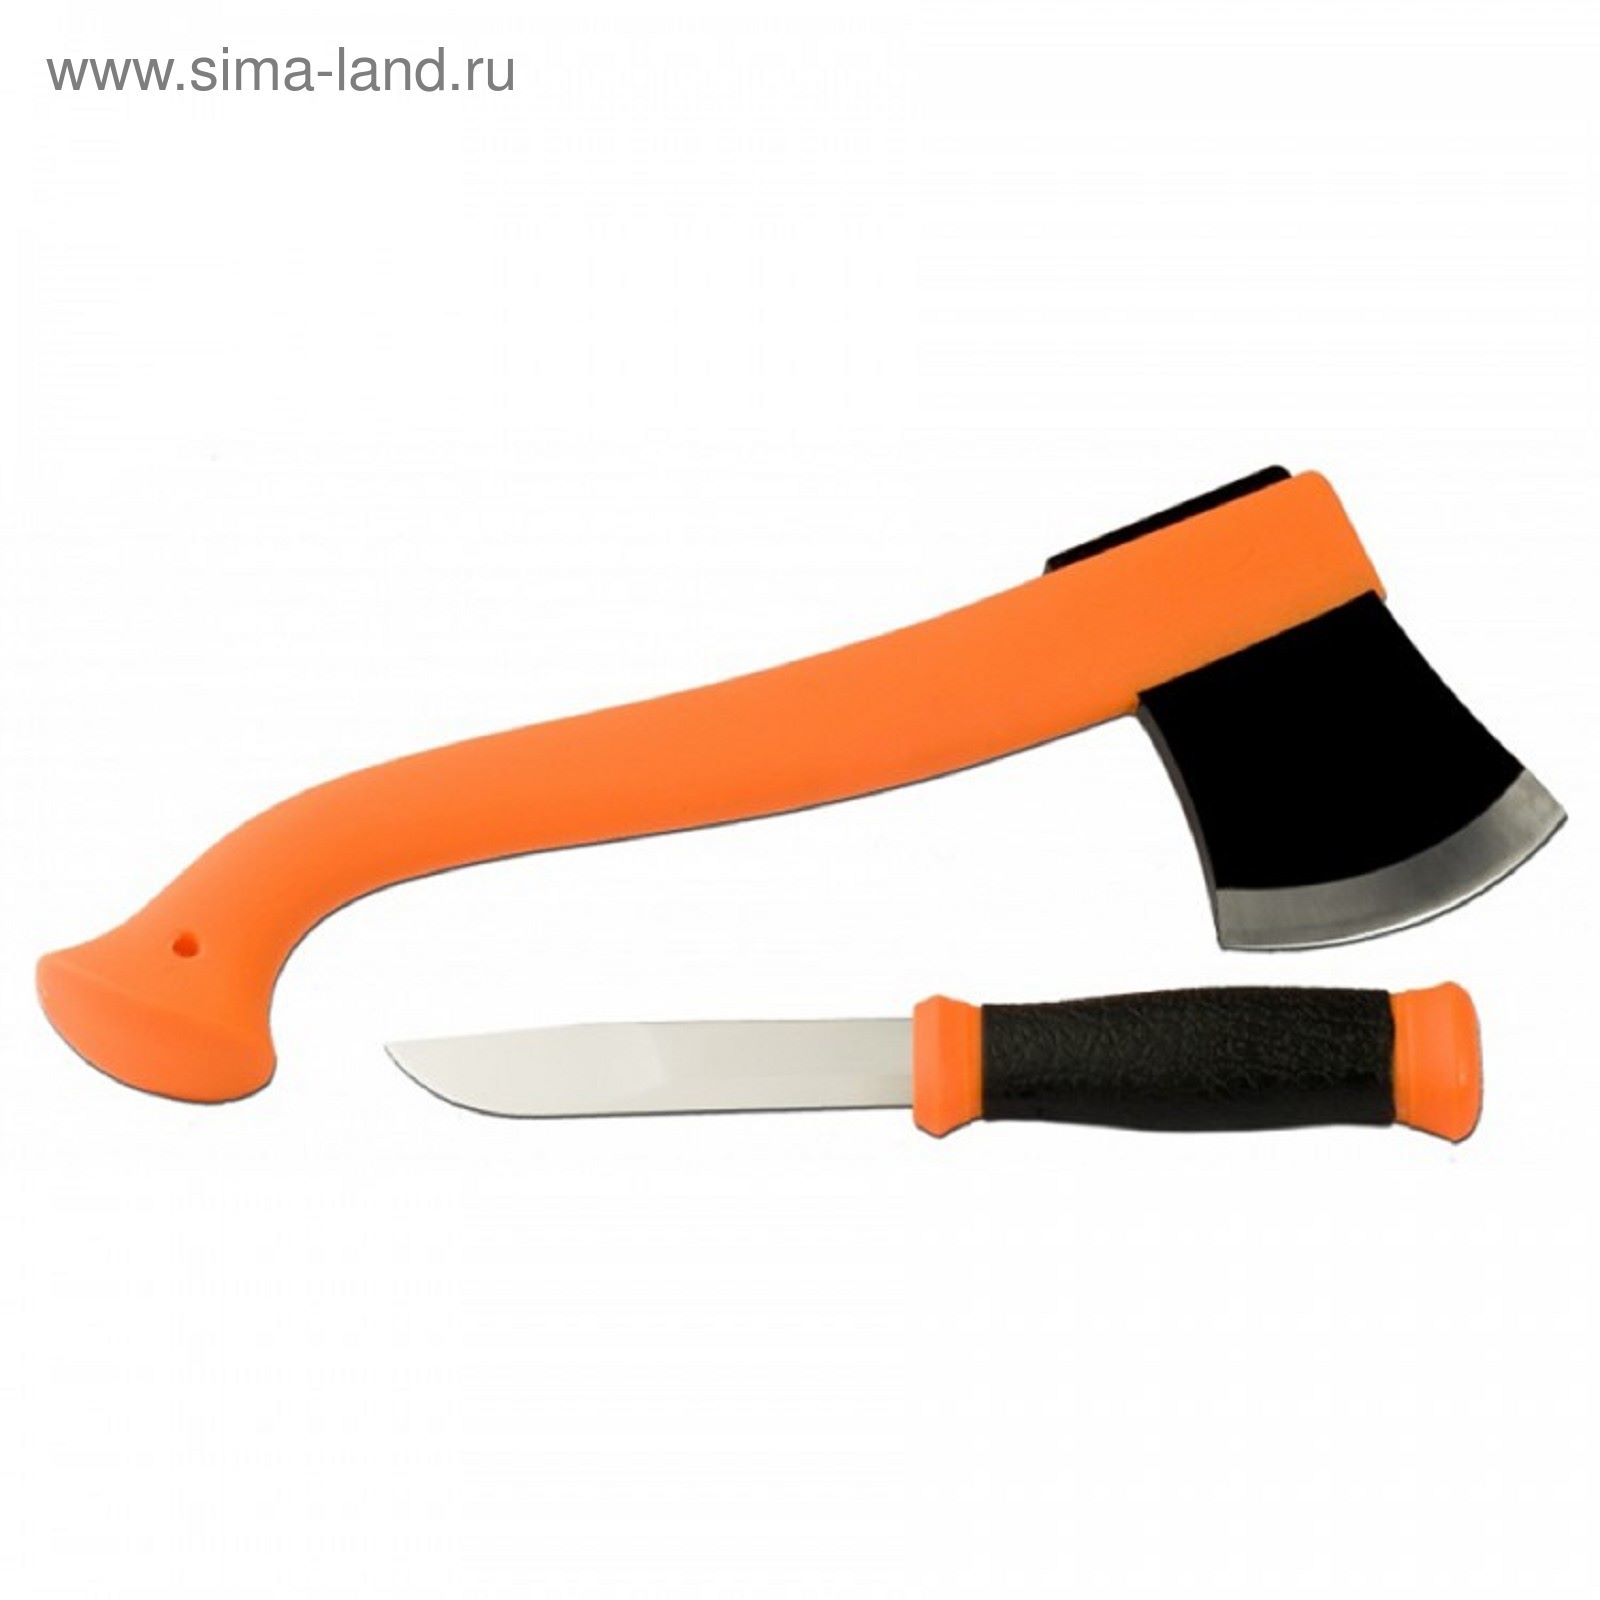 Набор Morakniv Outdoor Kit Orange: нож Morakniv 2000 нерж. сталь, цвет оранжевый + топор Mora Camp A